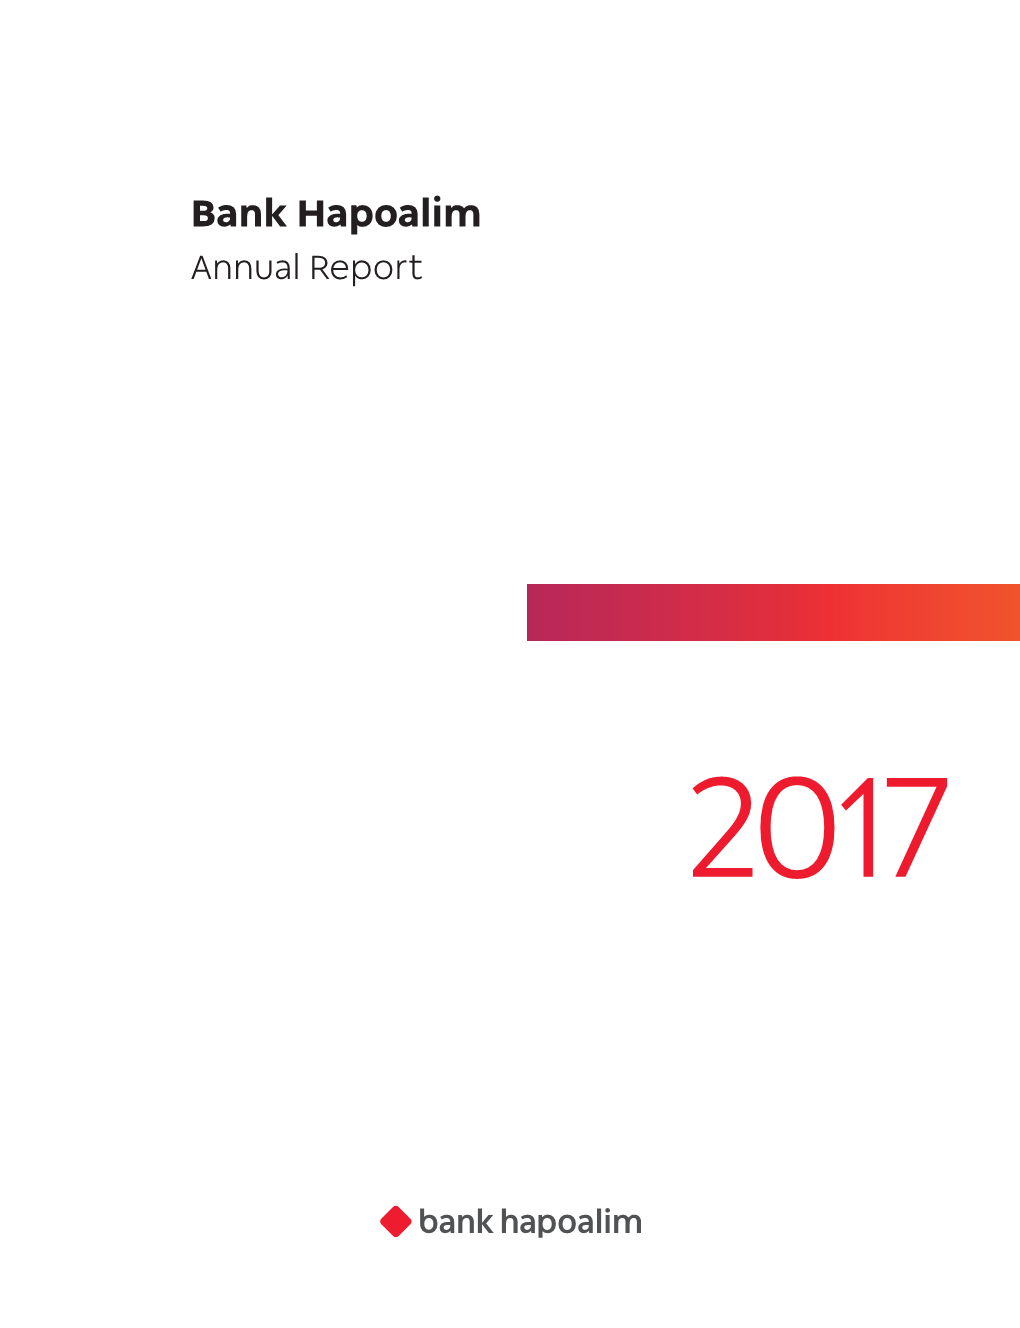 Bank Hapoalim Annual Report